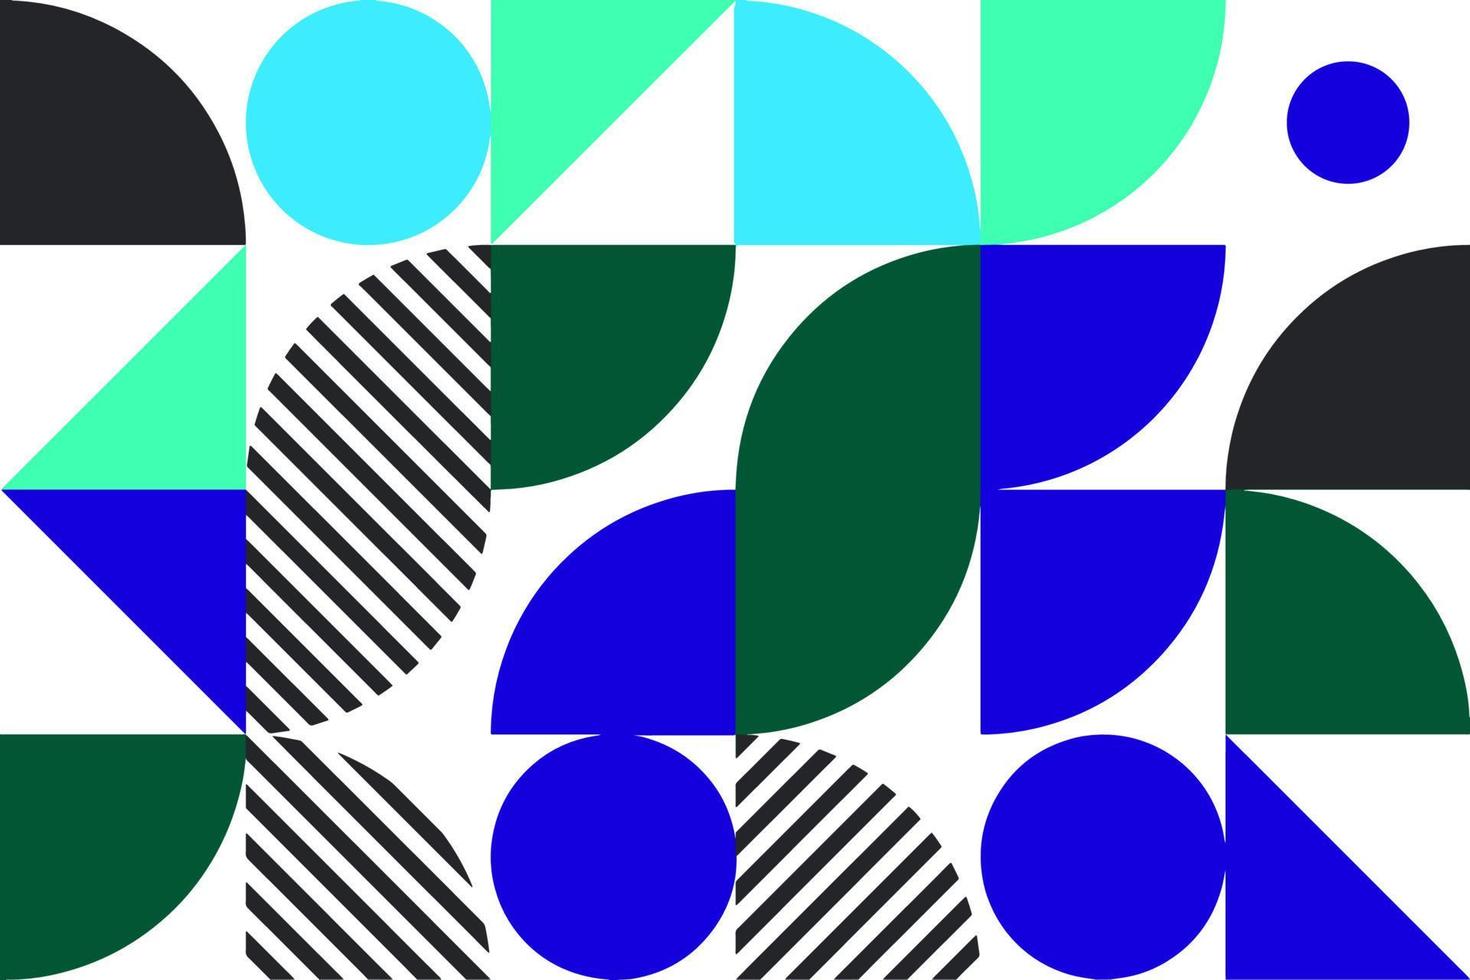 bauhaus abstract geometrisch patroon achtergrond. modern kunst patroon. abstract vector patroon ontwerp voor web spandoeken, dekt, inpakken, bedrijf presentaties, branding, muurschilderingen